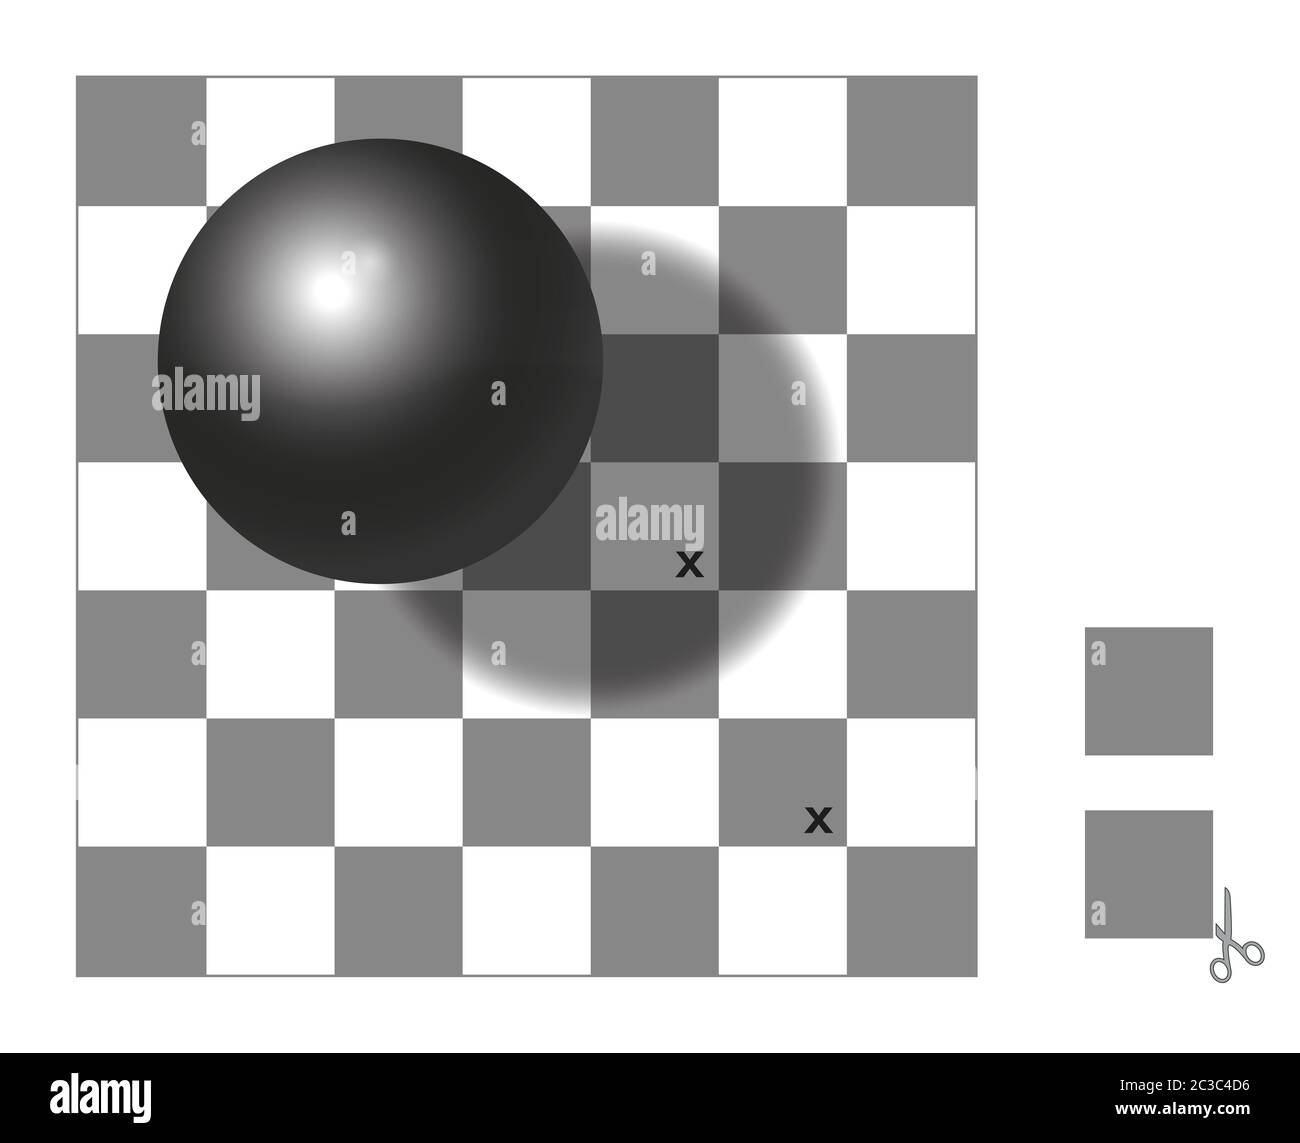 Illusion optique. Vérificateur d'illusion d'ombre. Les deux carrés avec la marque x sont de la même teinte de gris. Découpez les deux carrés supplémentaires, comparez et vérifiez. Banque D'Images